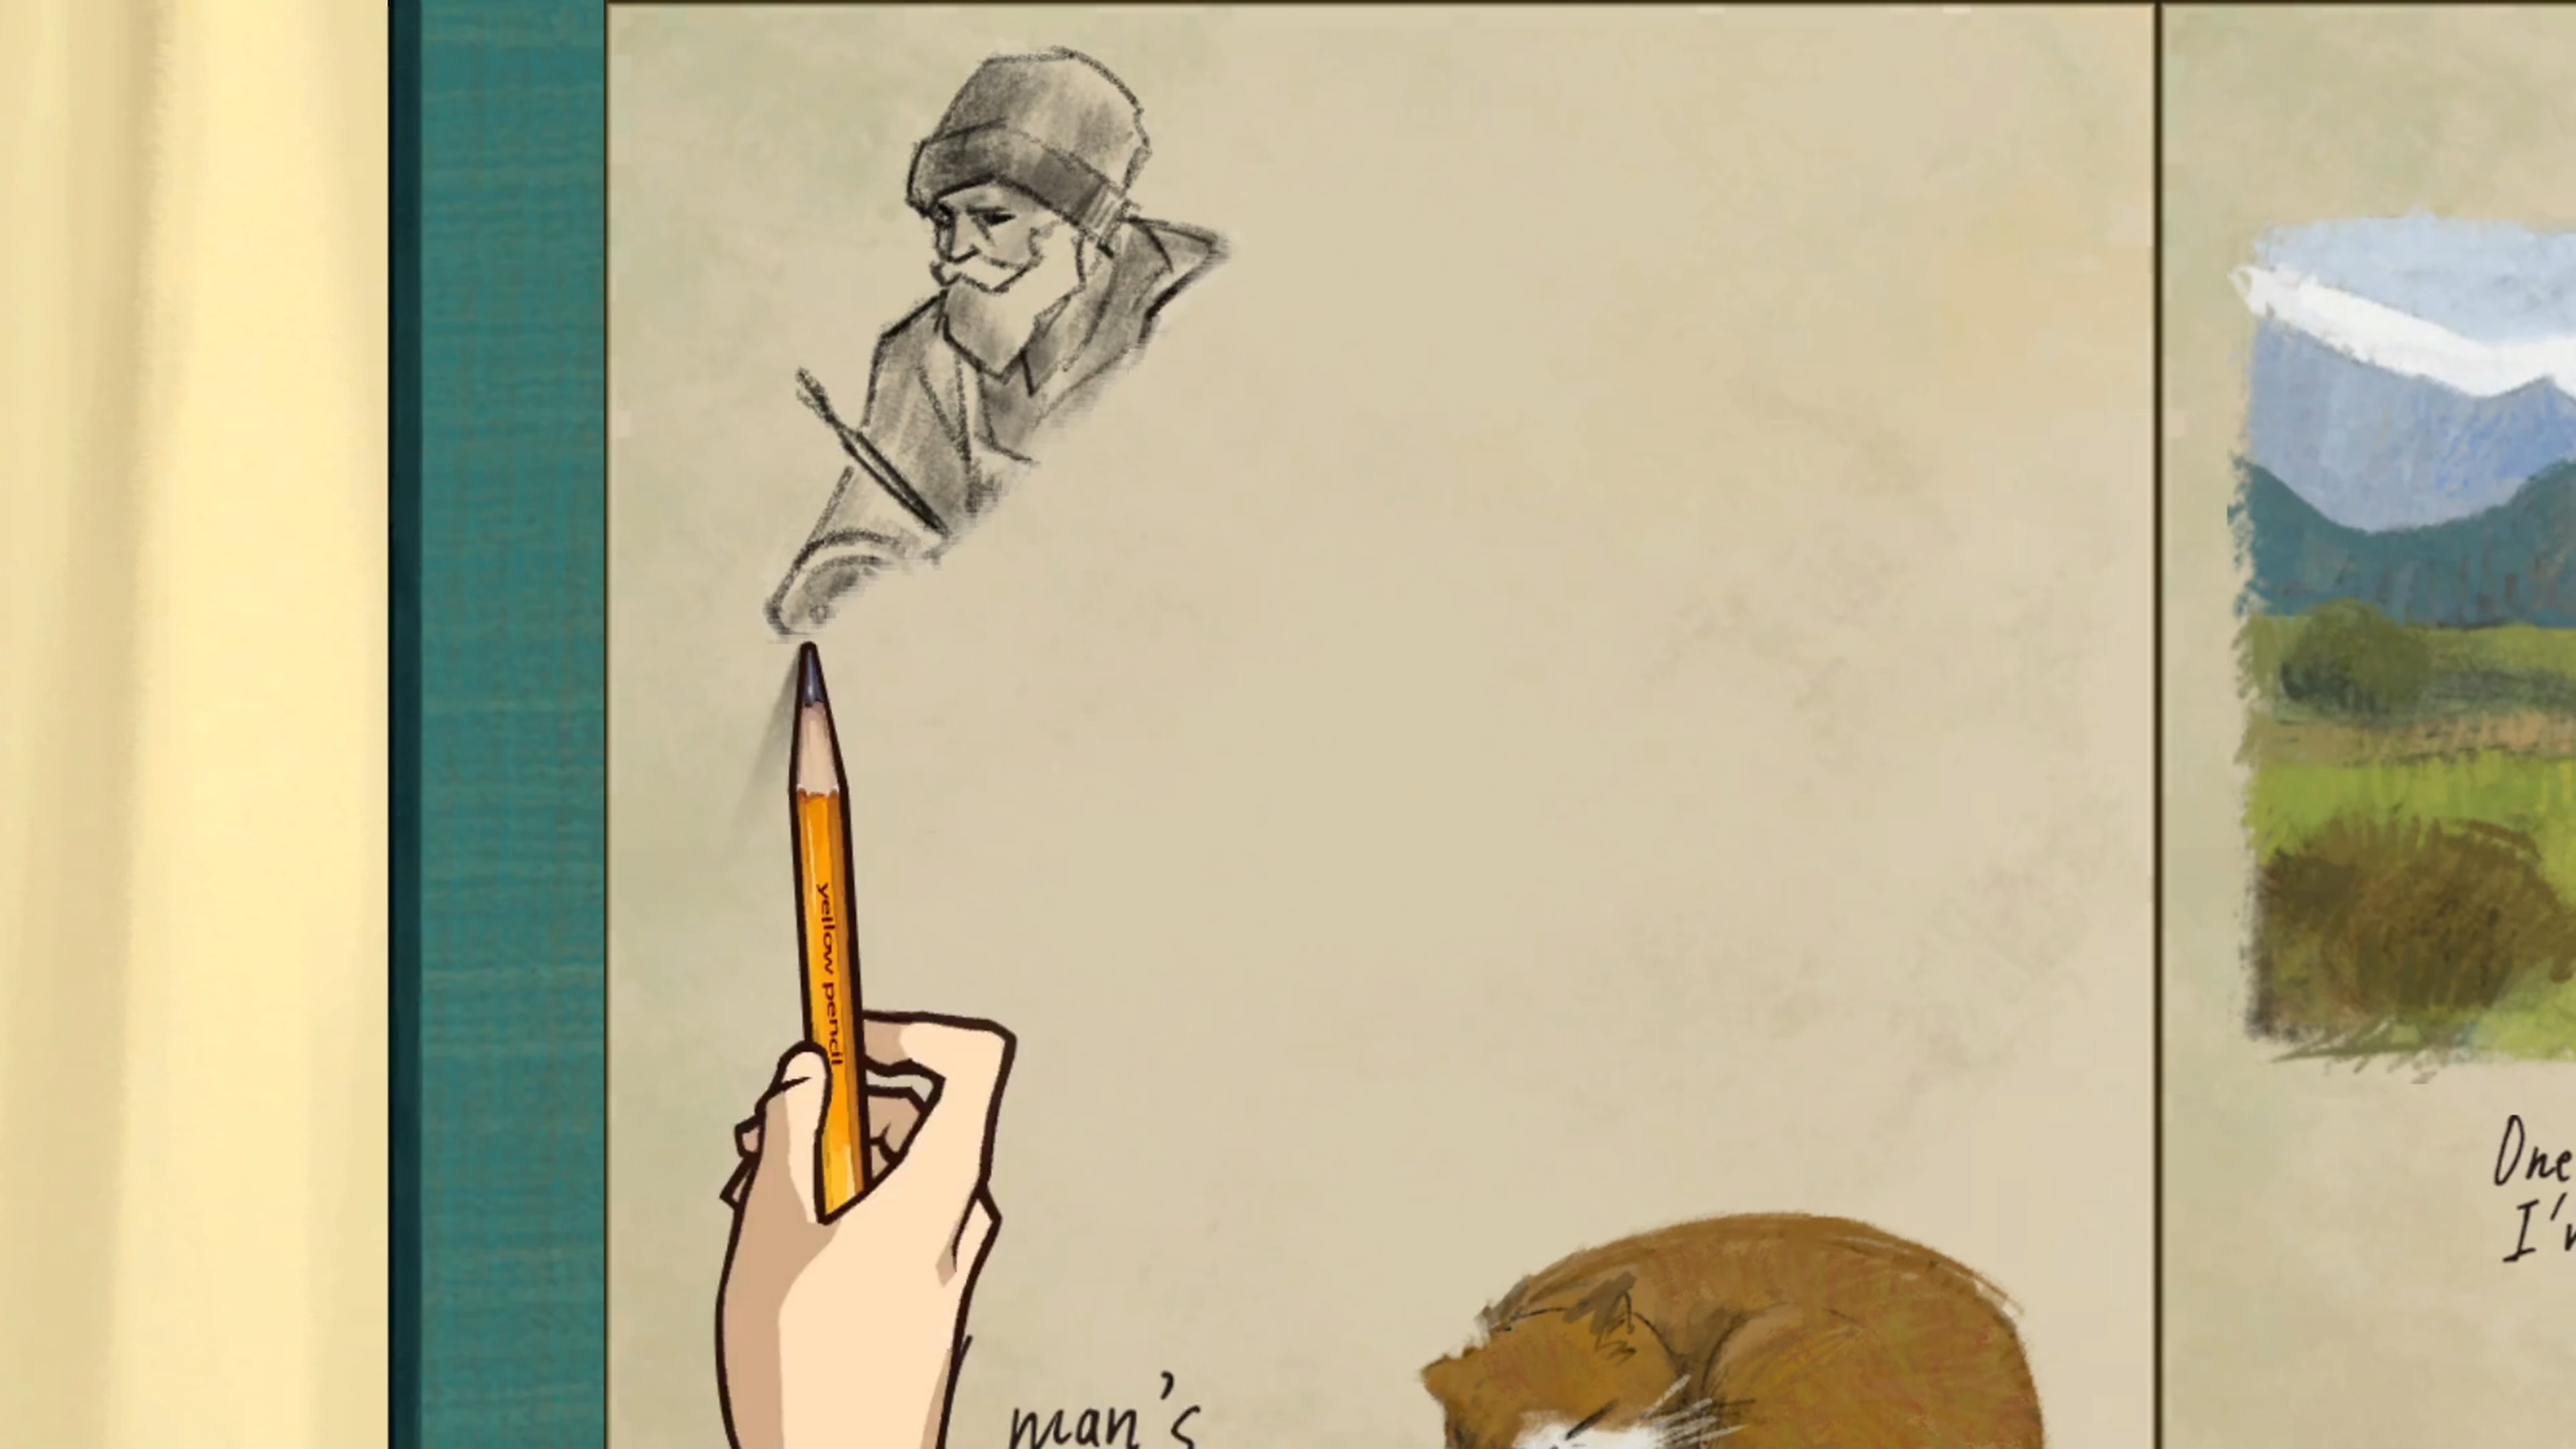 Behind the Frame: Das schönste Bild – Screenshot, der einen mit einem Bleistift zeichnenden Charakter zeigt